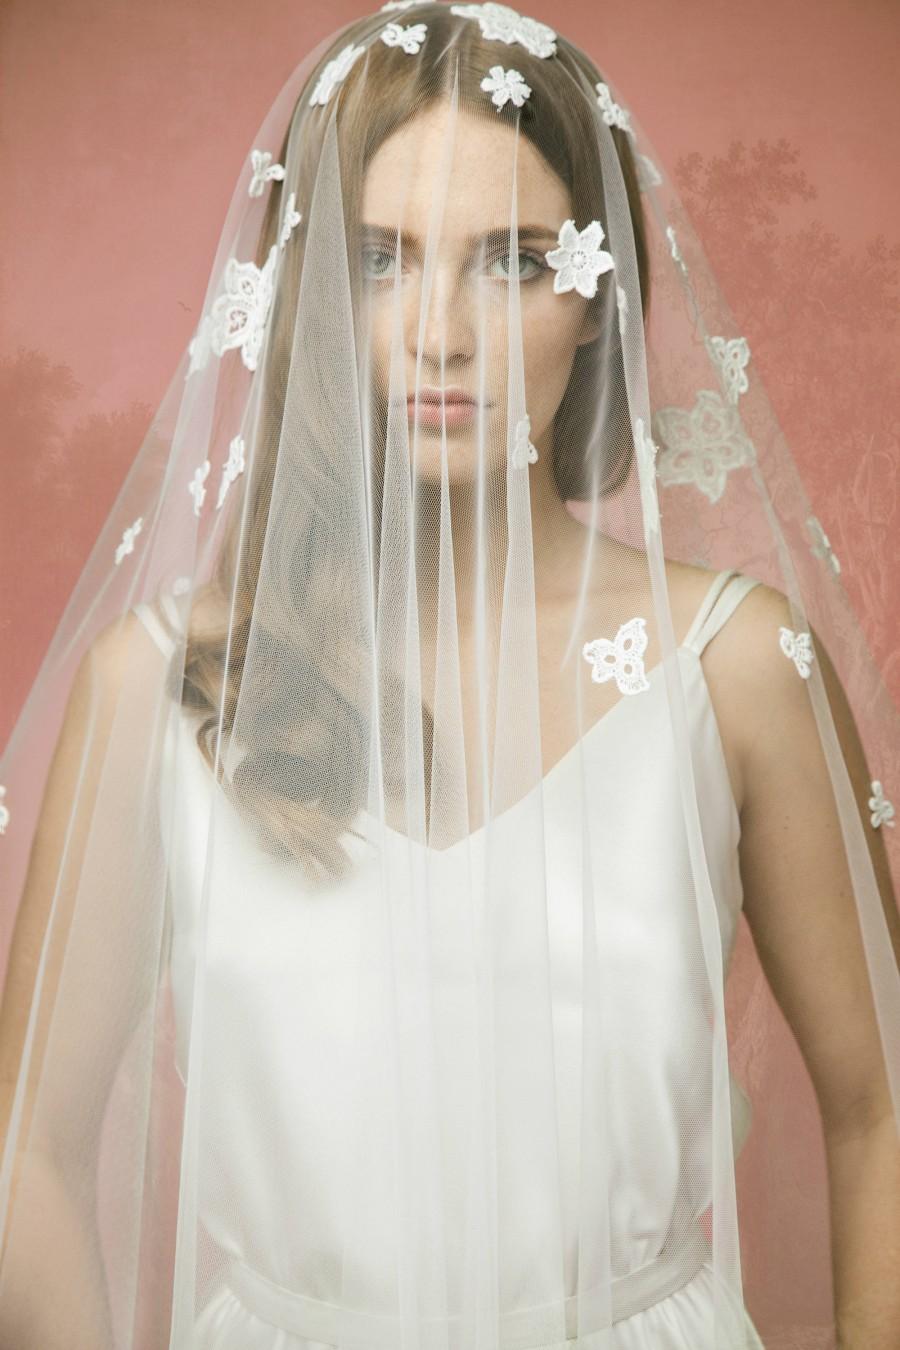 Свадьба - Lace Bridal Veil A10, Lace Wedding Veil, Lace Applique Veil,Cotton Lace Veil, Tulle Lace Veil, Double Layer Veil, Cathedral Veil, Chapel